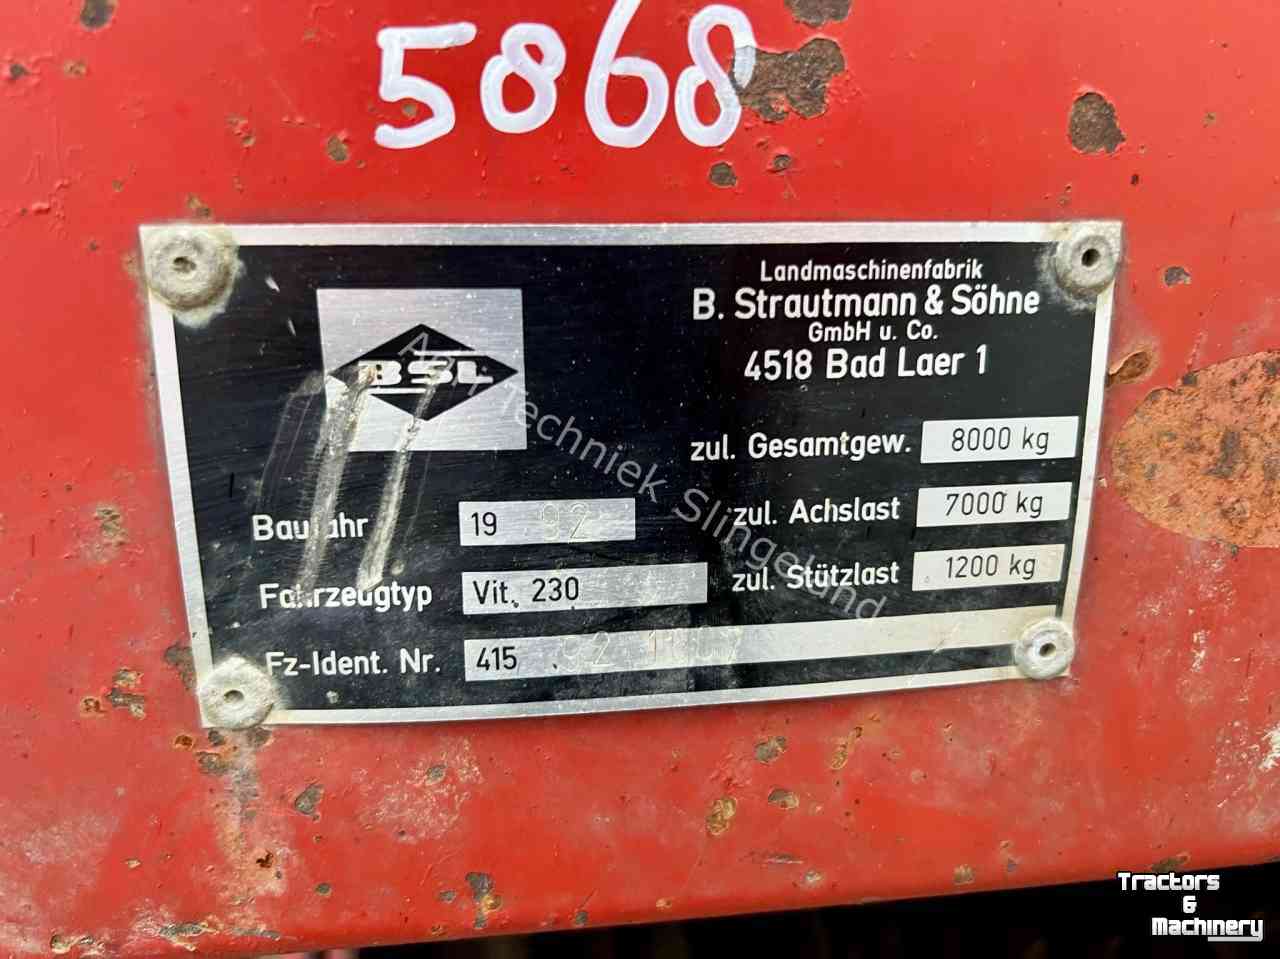 Lade- und Dosierwagen Strautmann Vitesse 230 opraapwagen